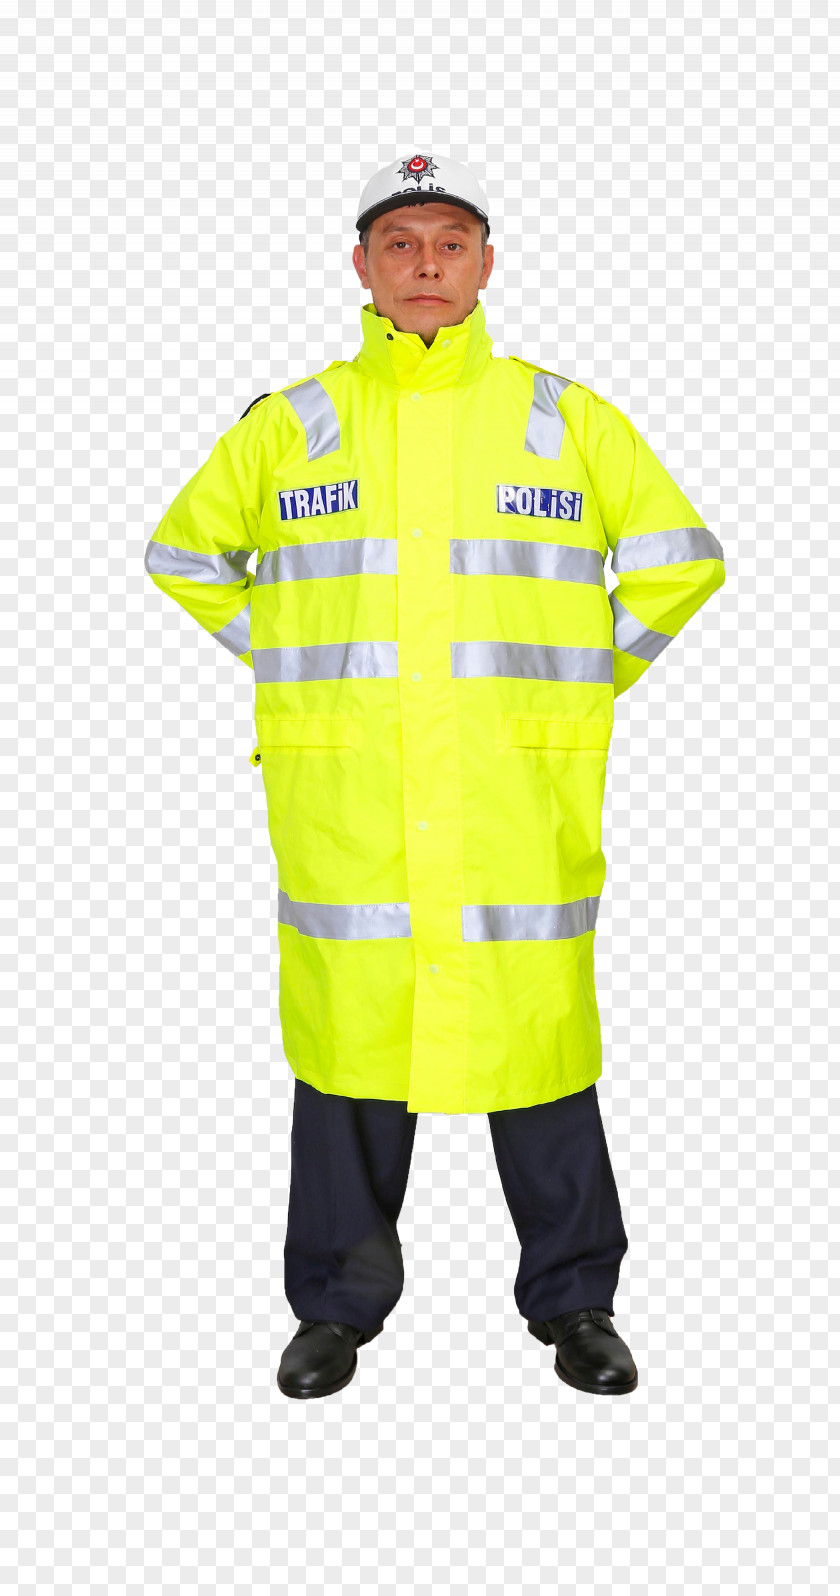 Police Uniform Parka Coat Jacket PNG